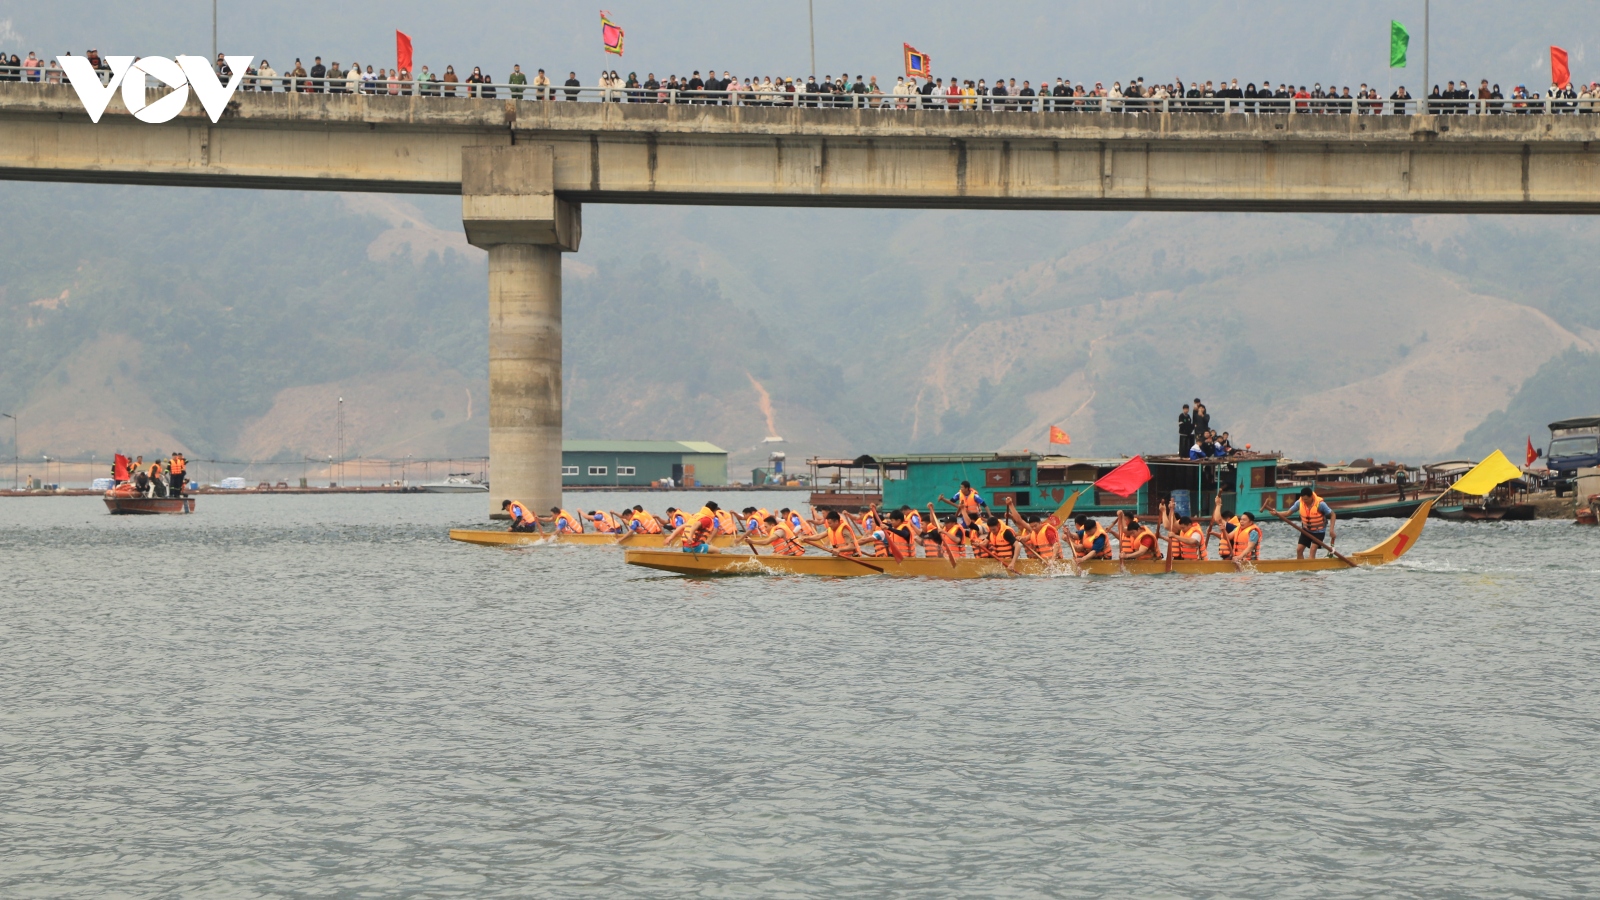 Đến Quỳnh Nhai xem hội đua thuyền trên sông Đà